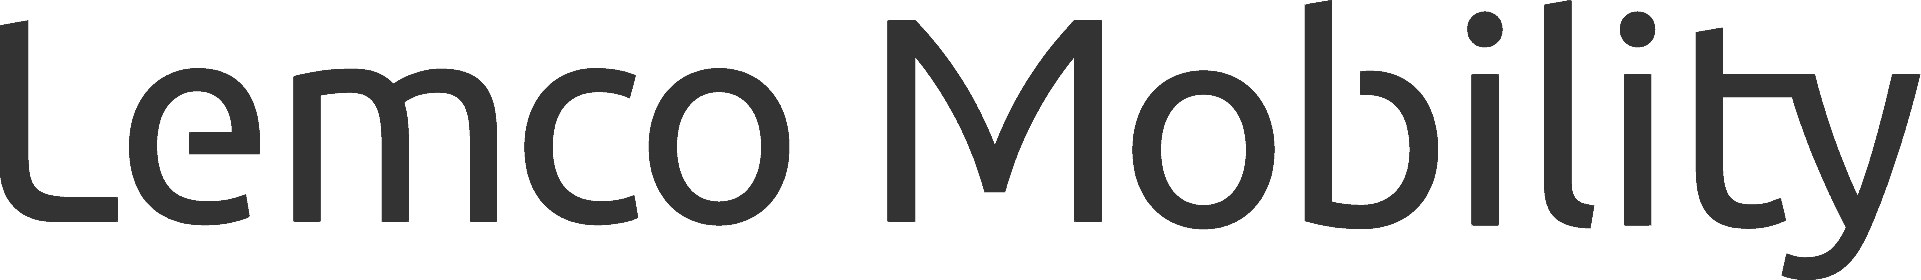 lemco Mobility logo